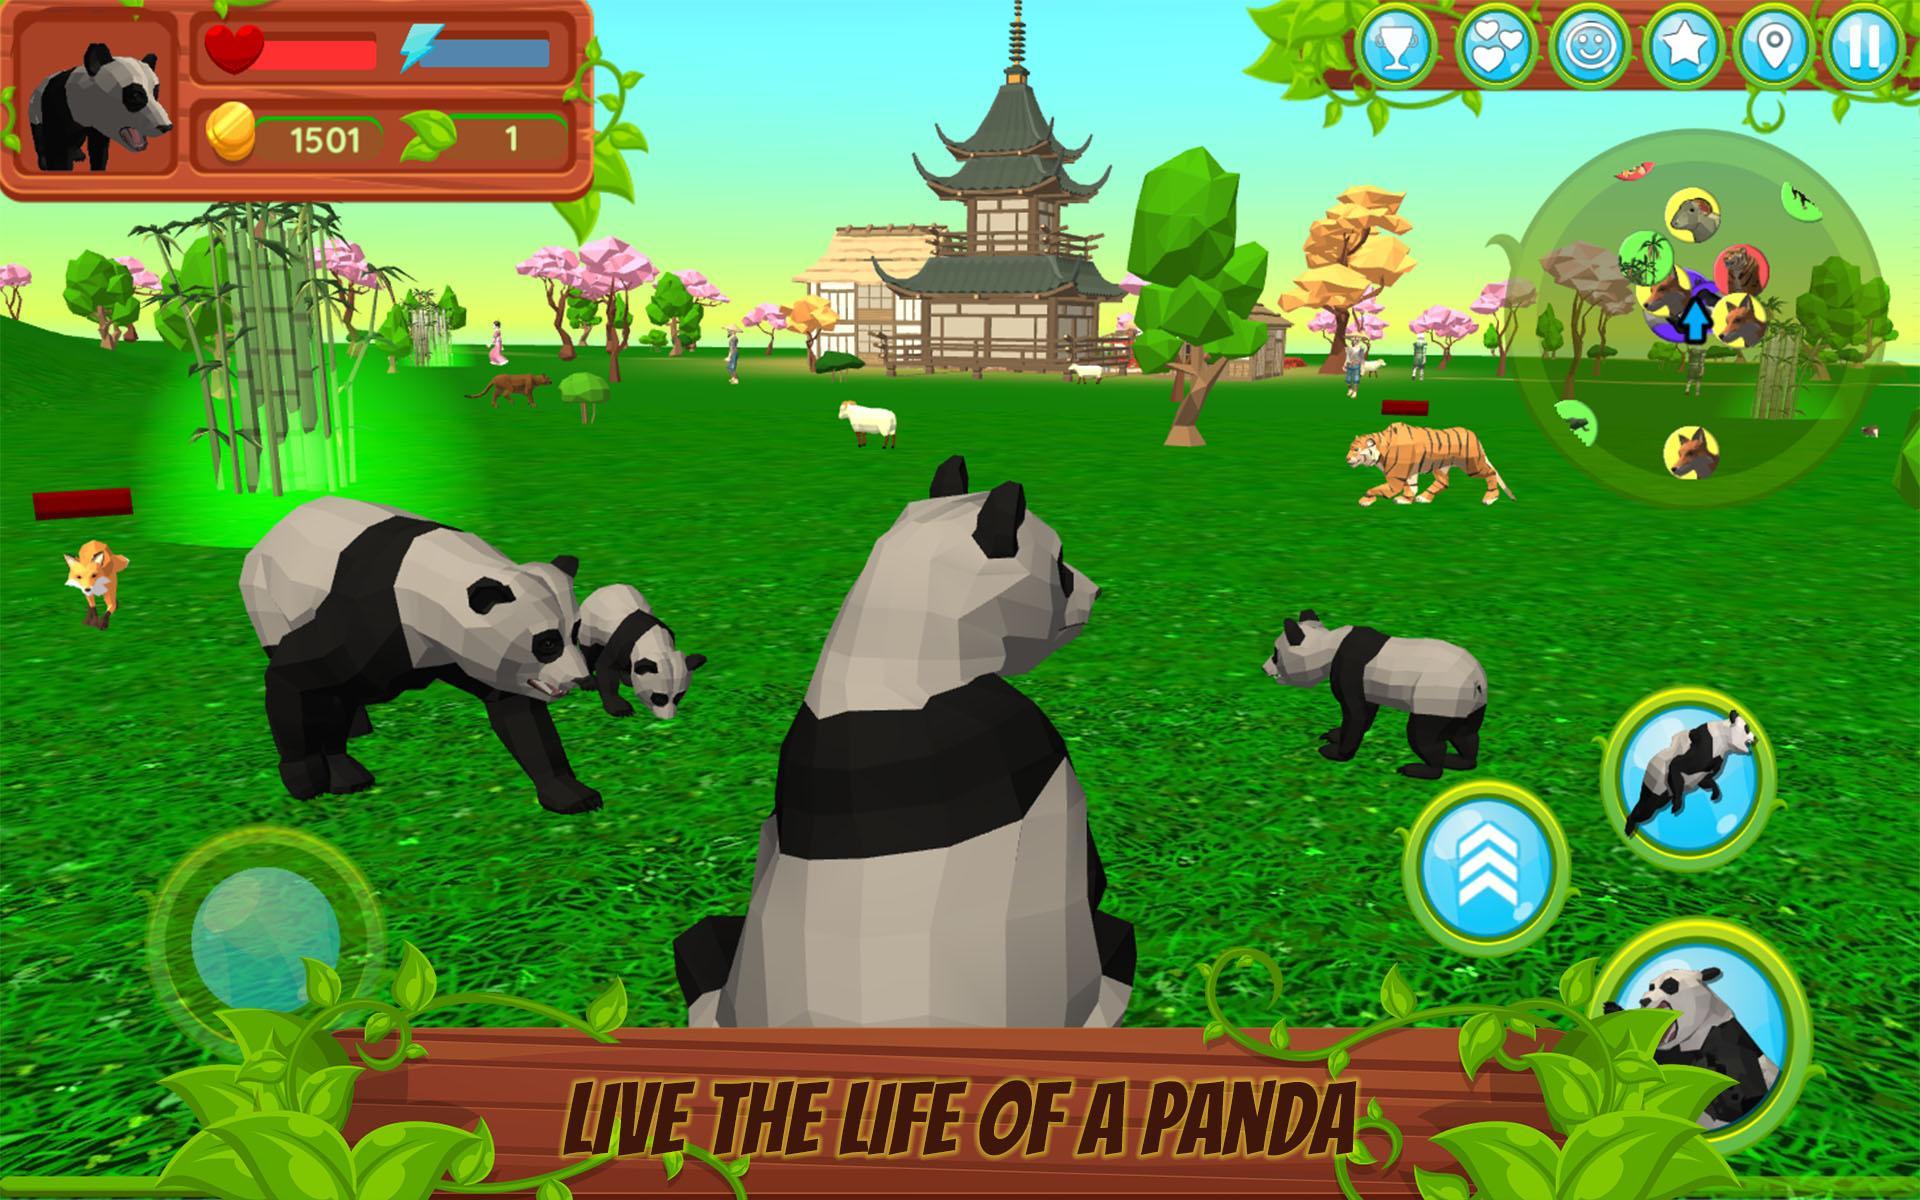 Screenshot 1 of Permainan Haiwan 3D Simulator Panda 1.054